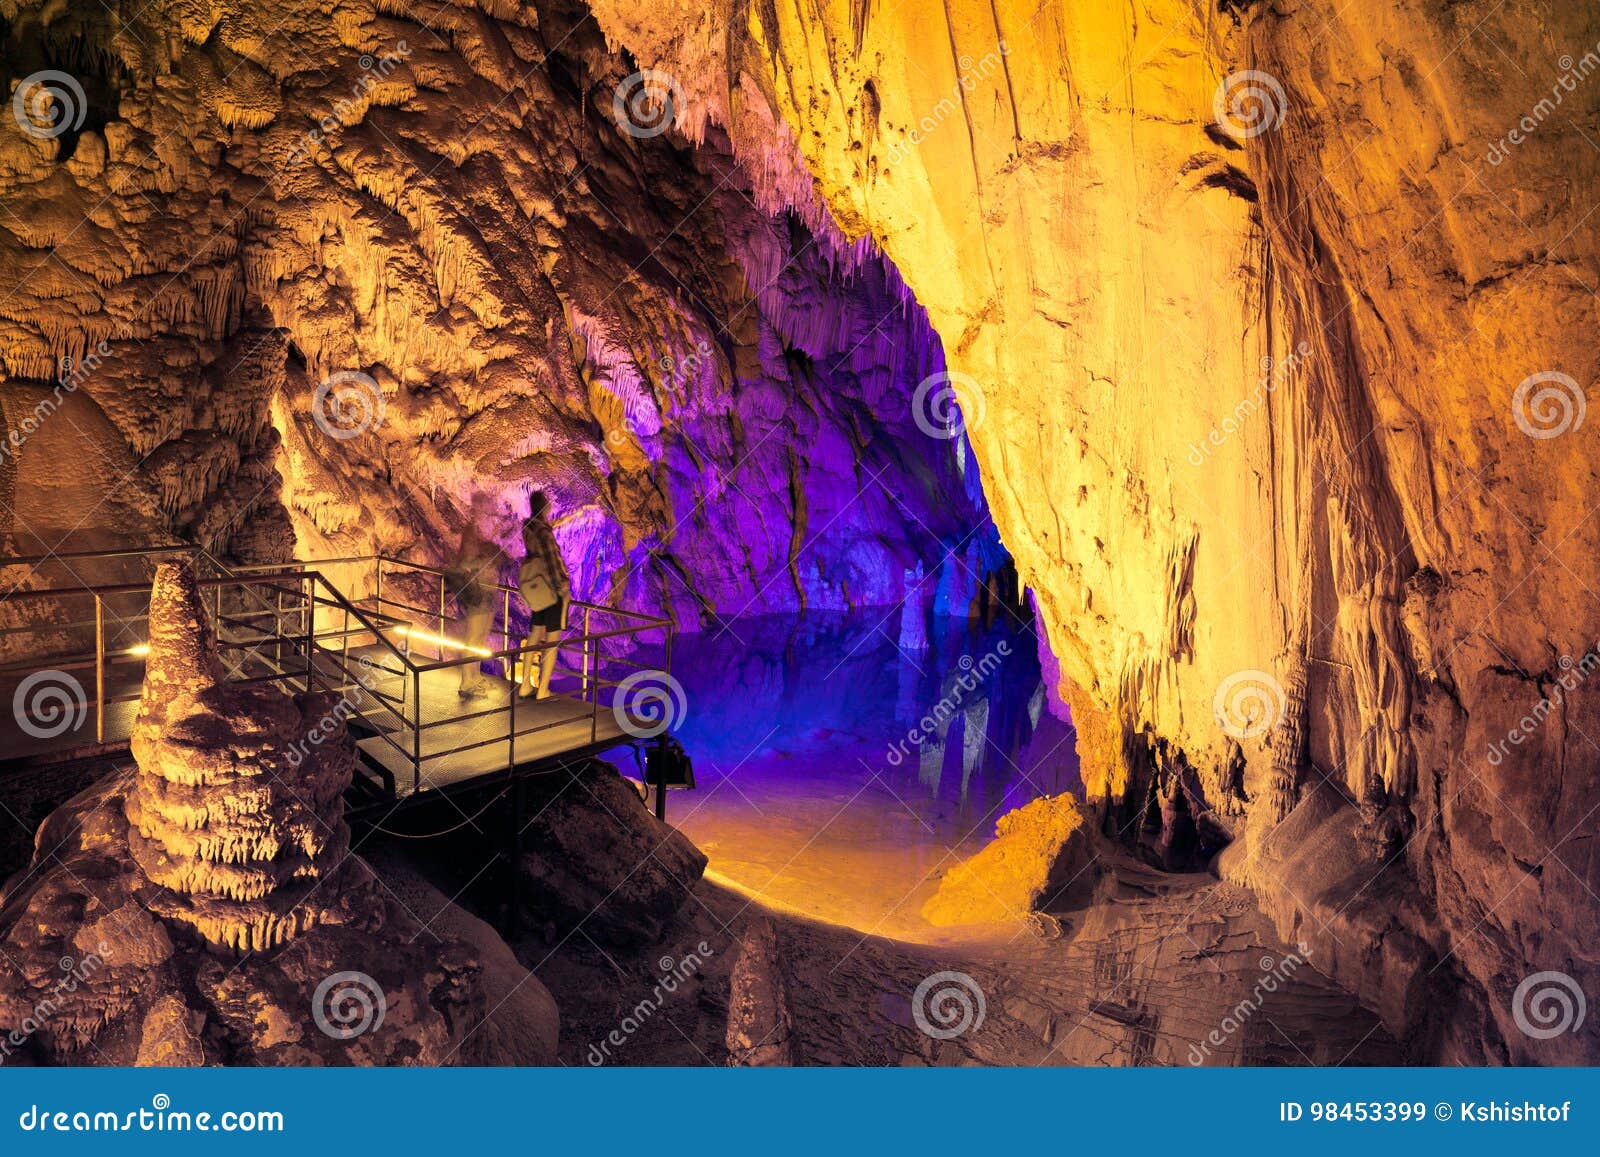 underground lake in dim cave